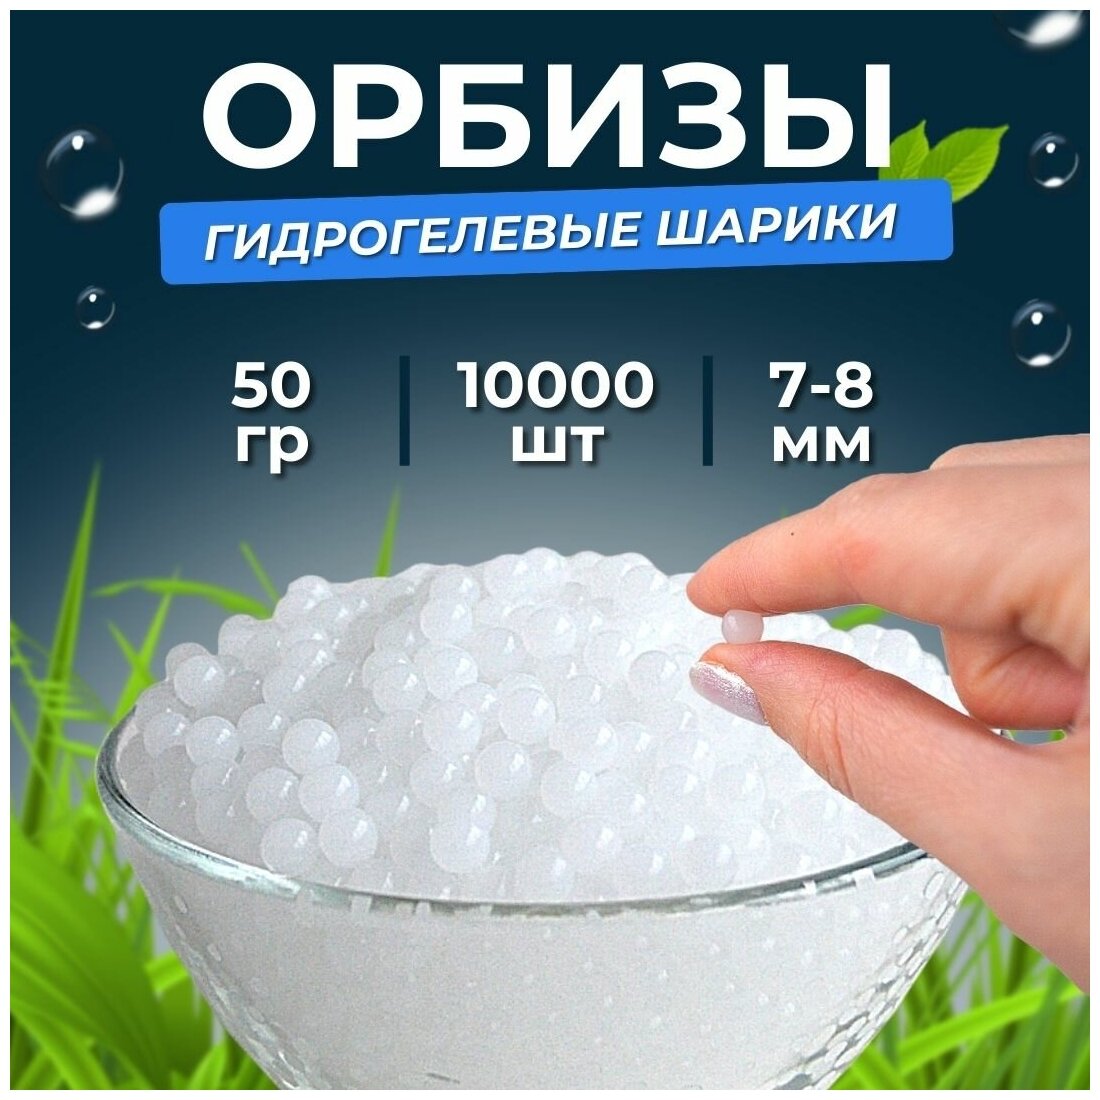 Орбизы гидрогелевые шарики 7-8 мм 10.000 шт белые прозрачная упаковка